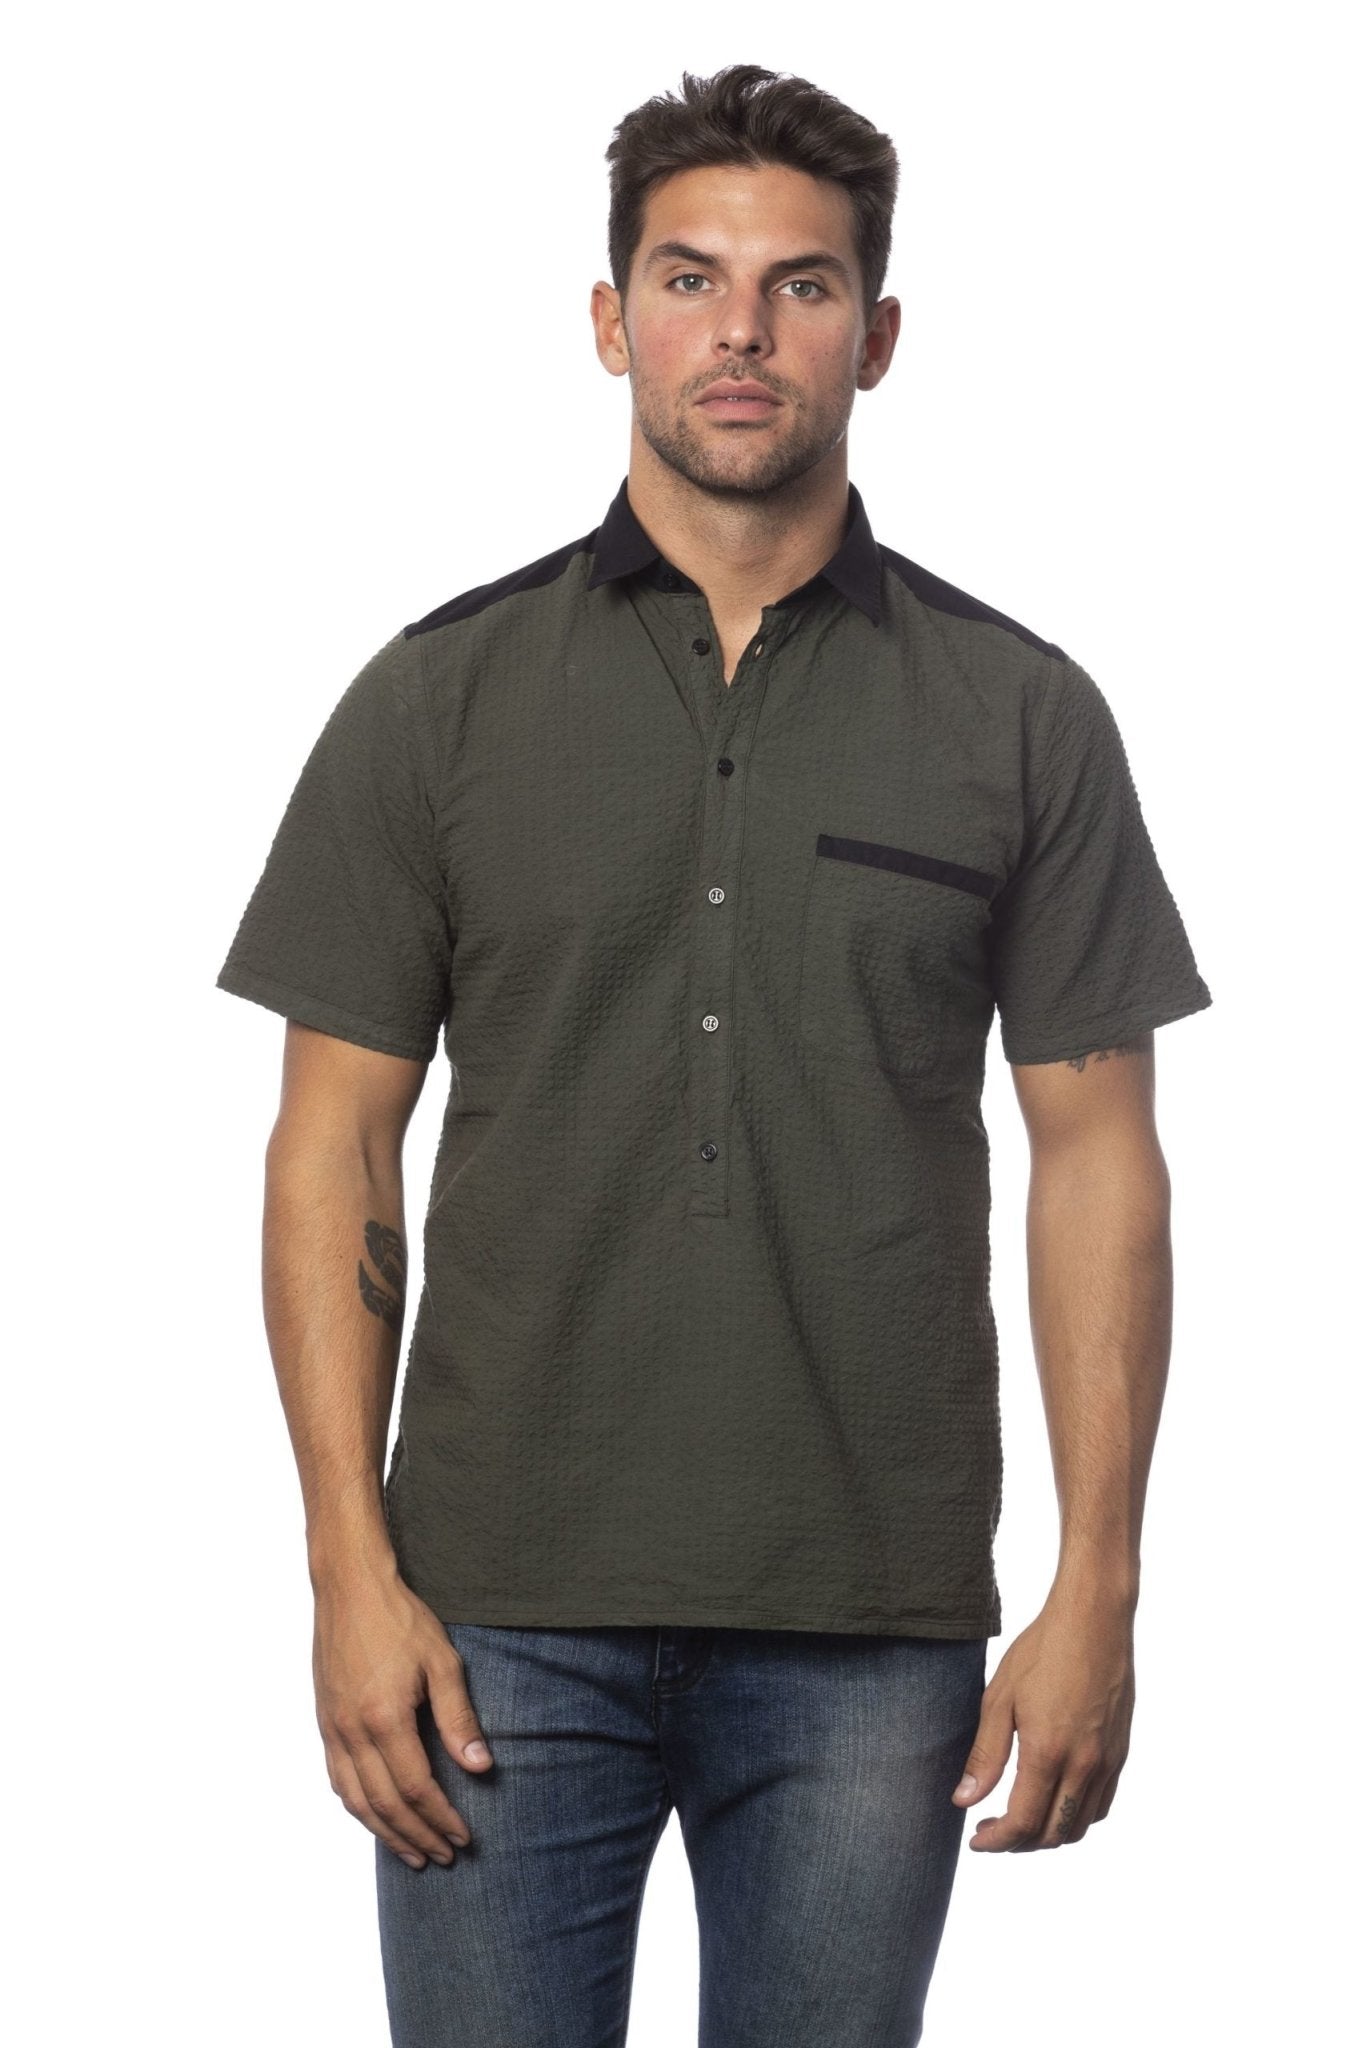 Verri Army Cotton Shirt - Fizigo